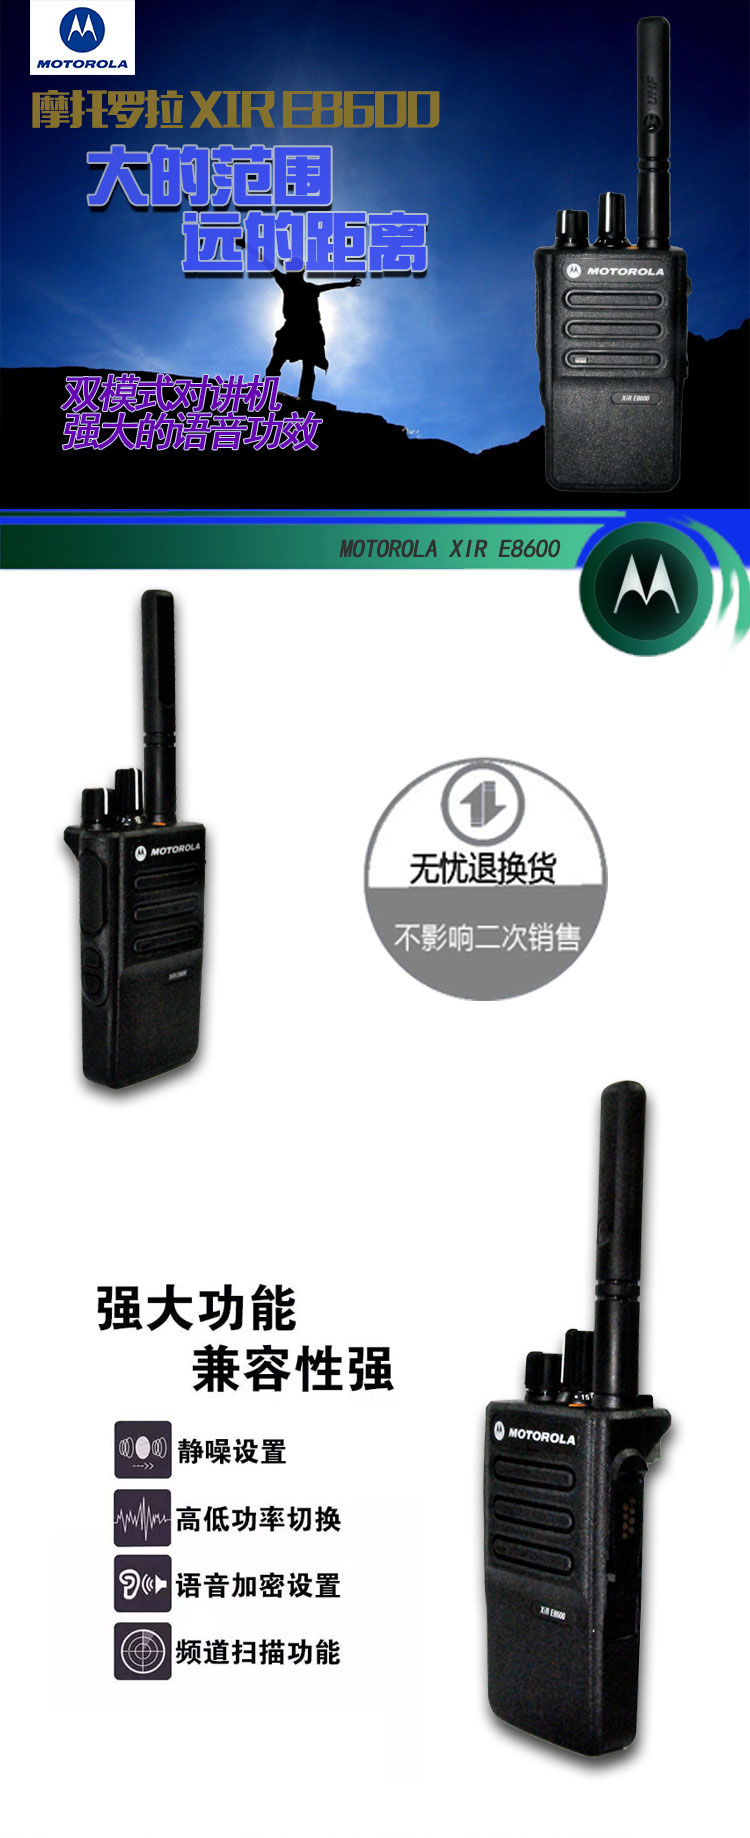 XIR E8600 / XIR E8608 便携式模拟/数字双模式对讲机